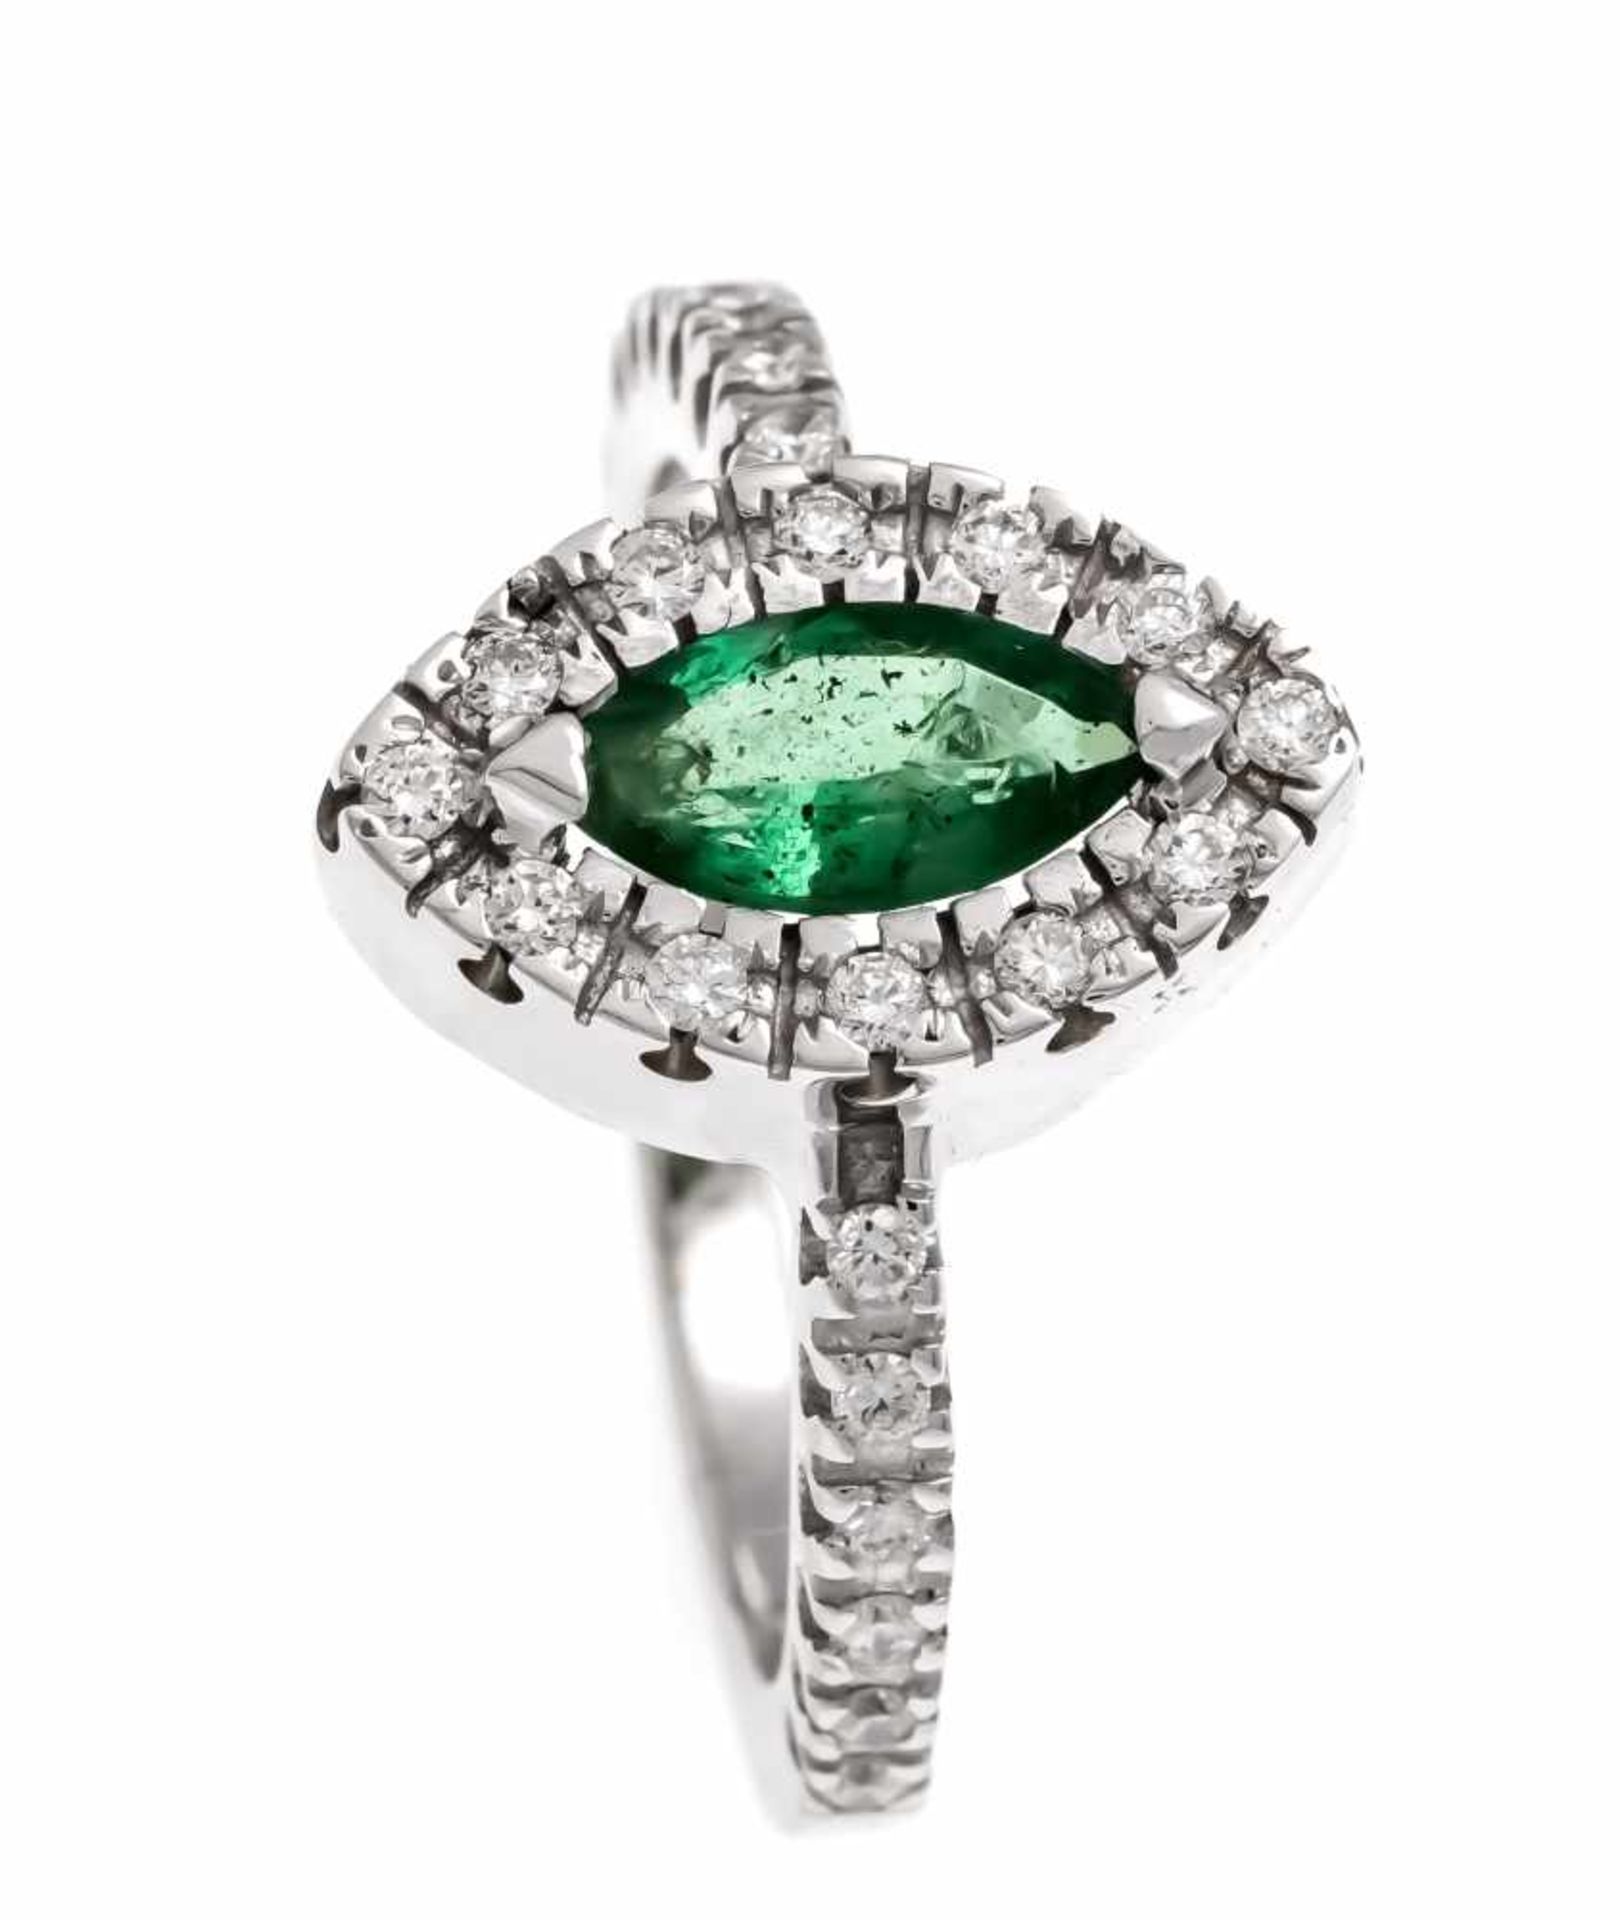 Smaragd-Brillant-Ring WG 585/000 mit einem fac. Smaragd-Navette 1,20 ct in sehr guterFarbe und